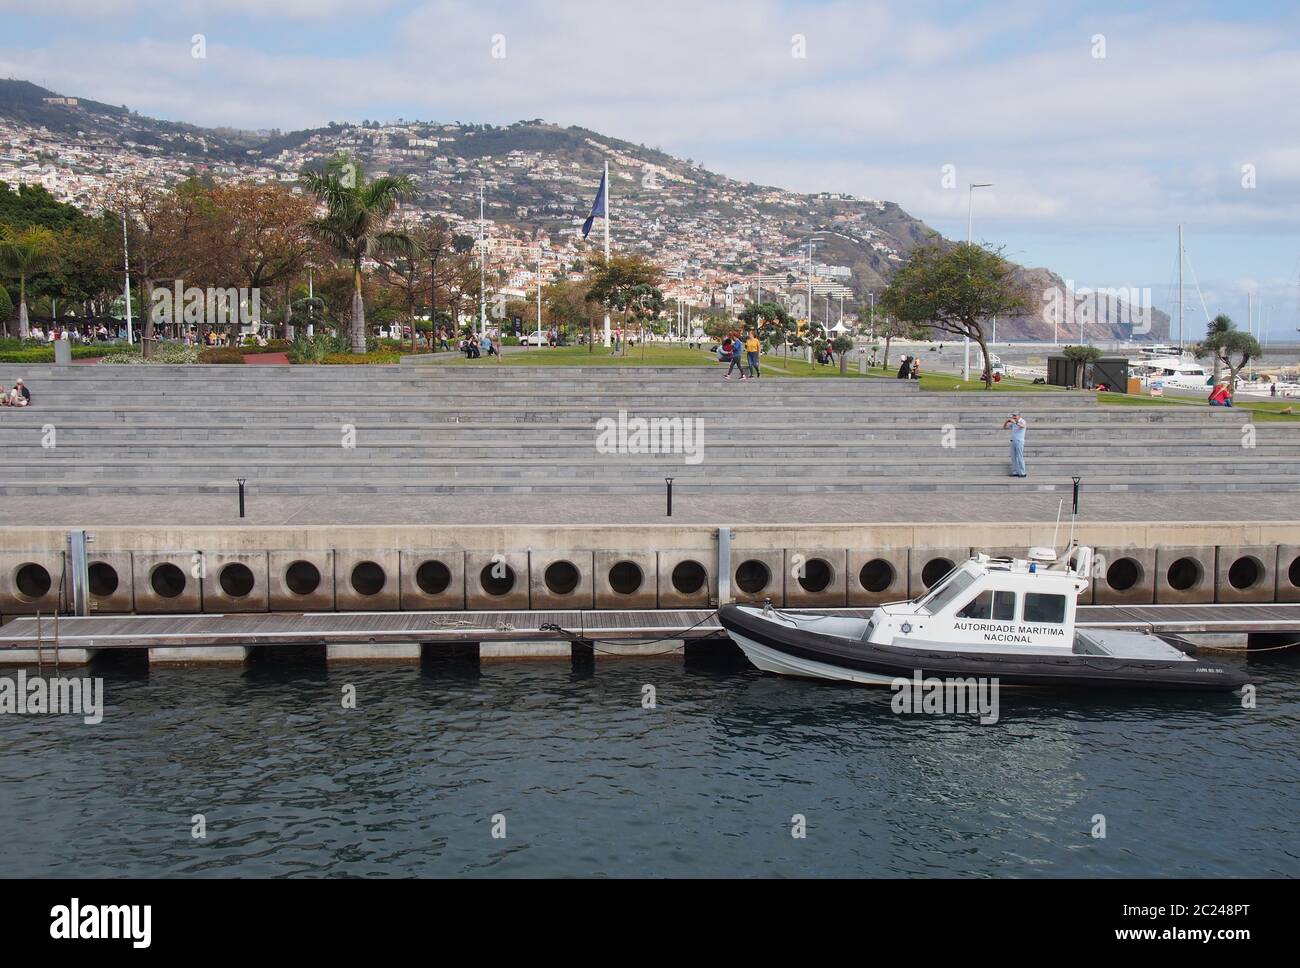 Ein Boot der portugiesischen Seebehörde, das im Hafen von funchal neben dem öffentlichen Park festgemacht ist Stockfoto